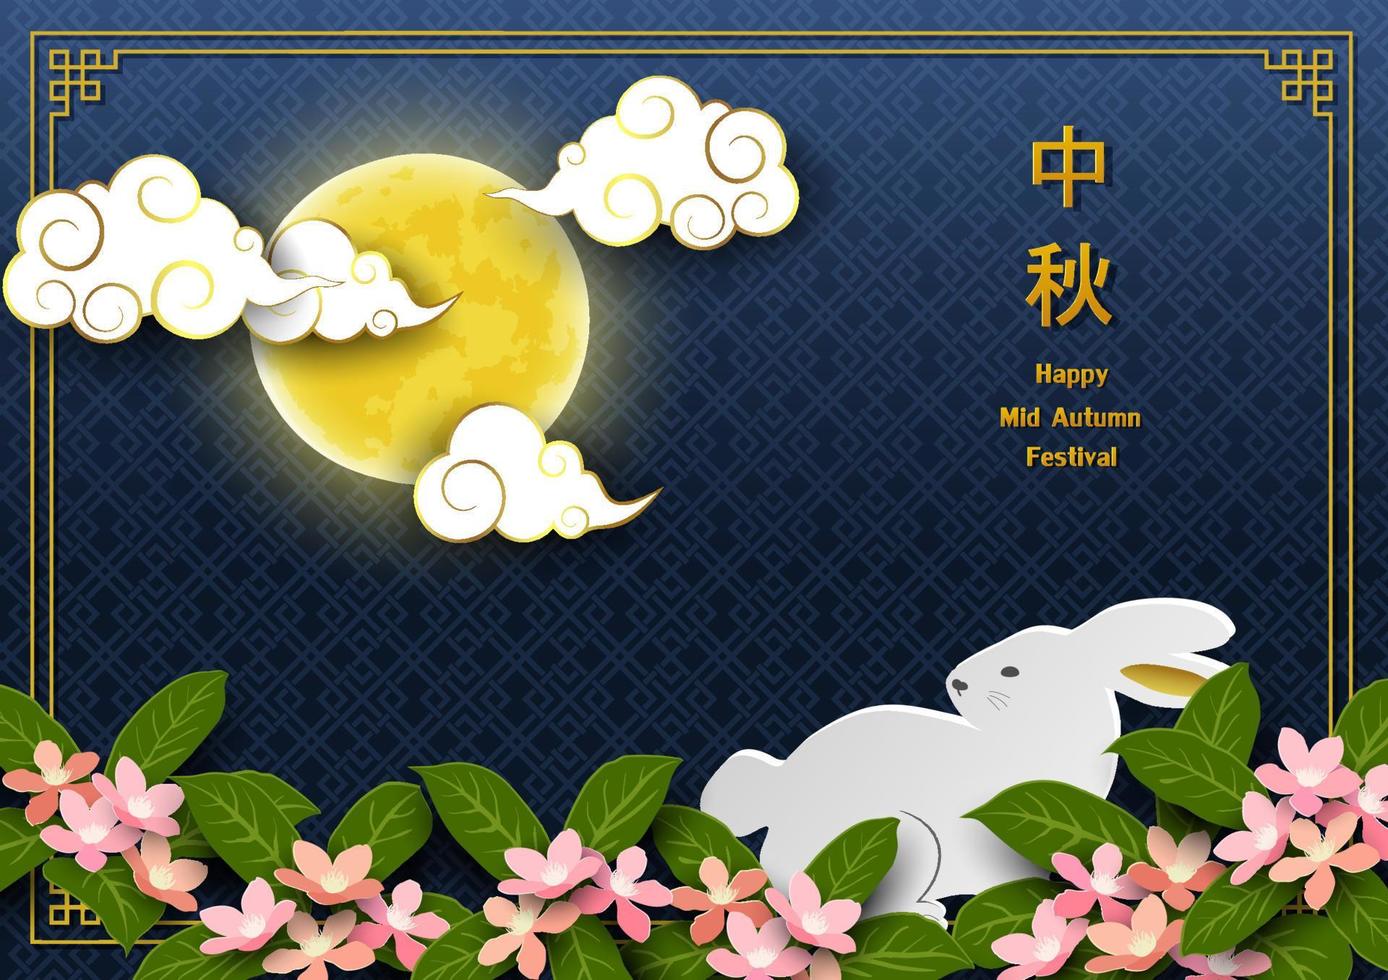 cumprimento cartão para meio outono ou lua festival, asiático elementos com cheio lua, nuvem, bonito Coelho e cereja Flor em azul plano de fundo, chinês traduzir significar meio outono festival vetor